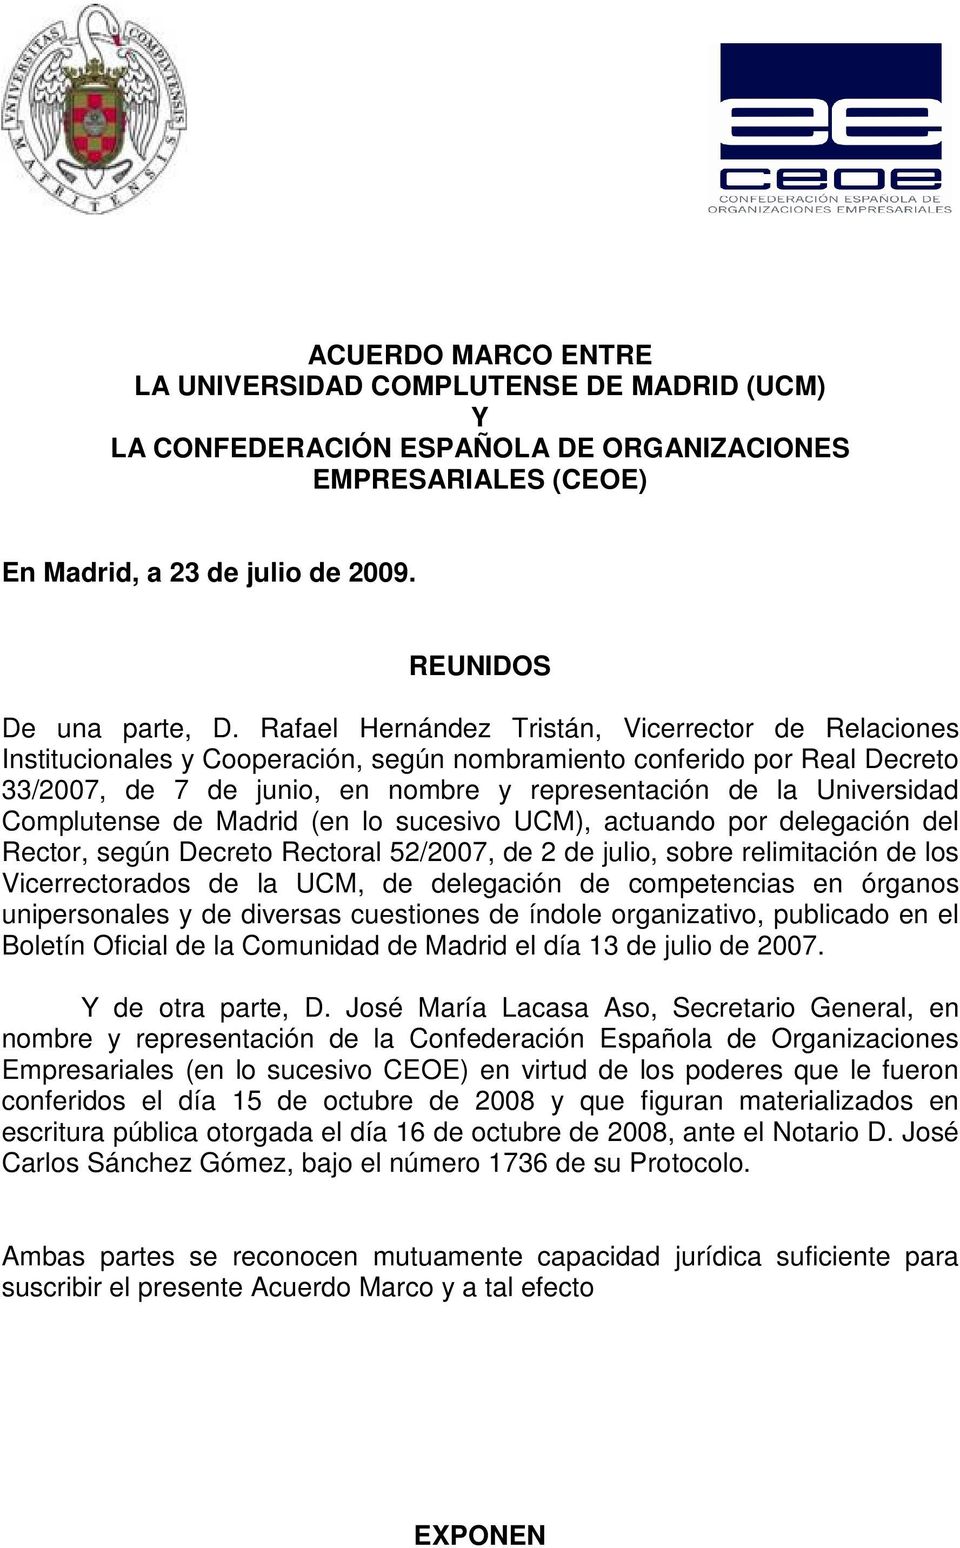 Complutense de Madrid (en lo sucesivo UCM), actuando por delegación del Rector, según Decreto Rectoral 52/2007, de 2 de julio, sobre relimitación de los Vicerrectorados de la UCM, de delegación de